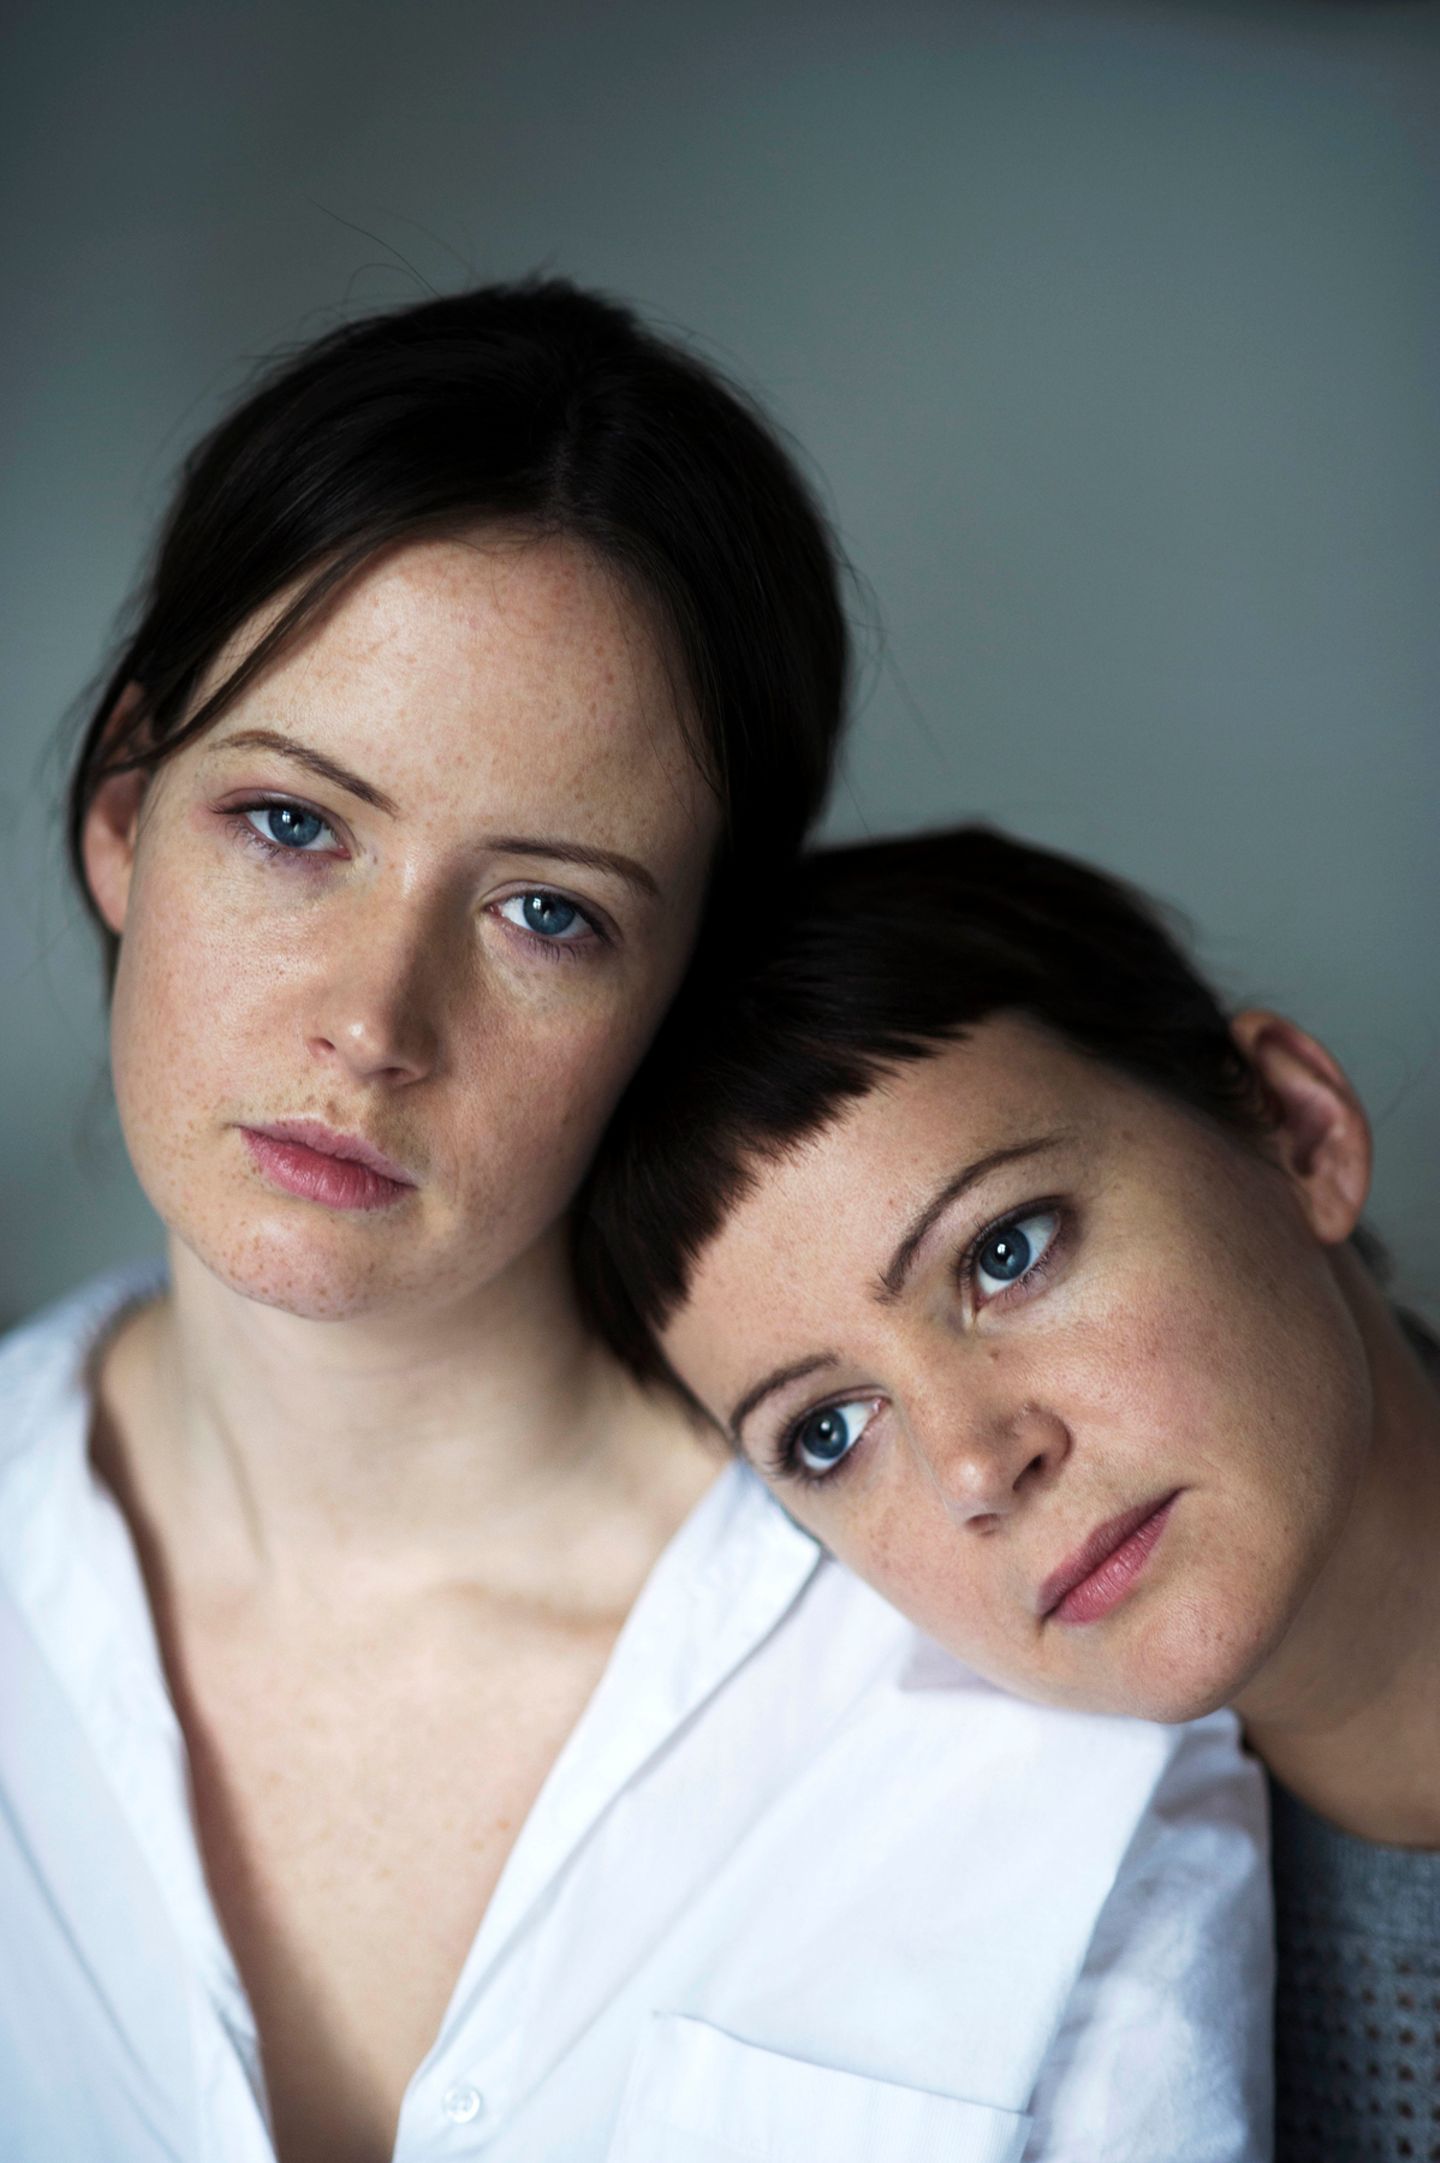 Bildband "Sisters": Schwesterherzen: Porträts grenzenloser Liebe